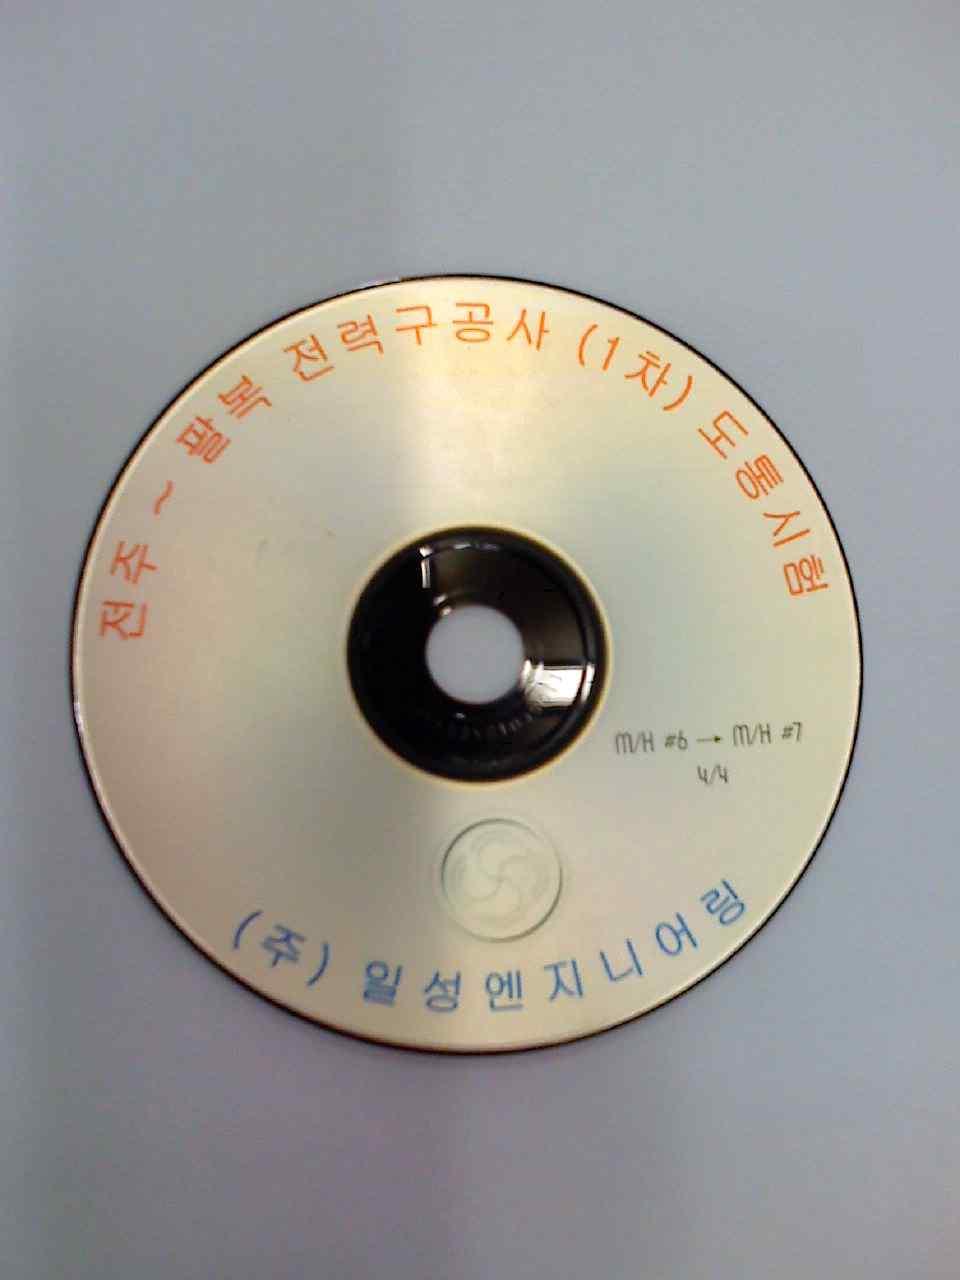 2 인출된관로에서다른공에도통봉을삽입하여촬영한다. 1.3 관로촬영완료후도통시험영상을 CD 로저장하고출력한다.